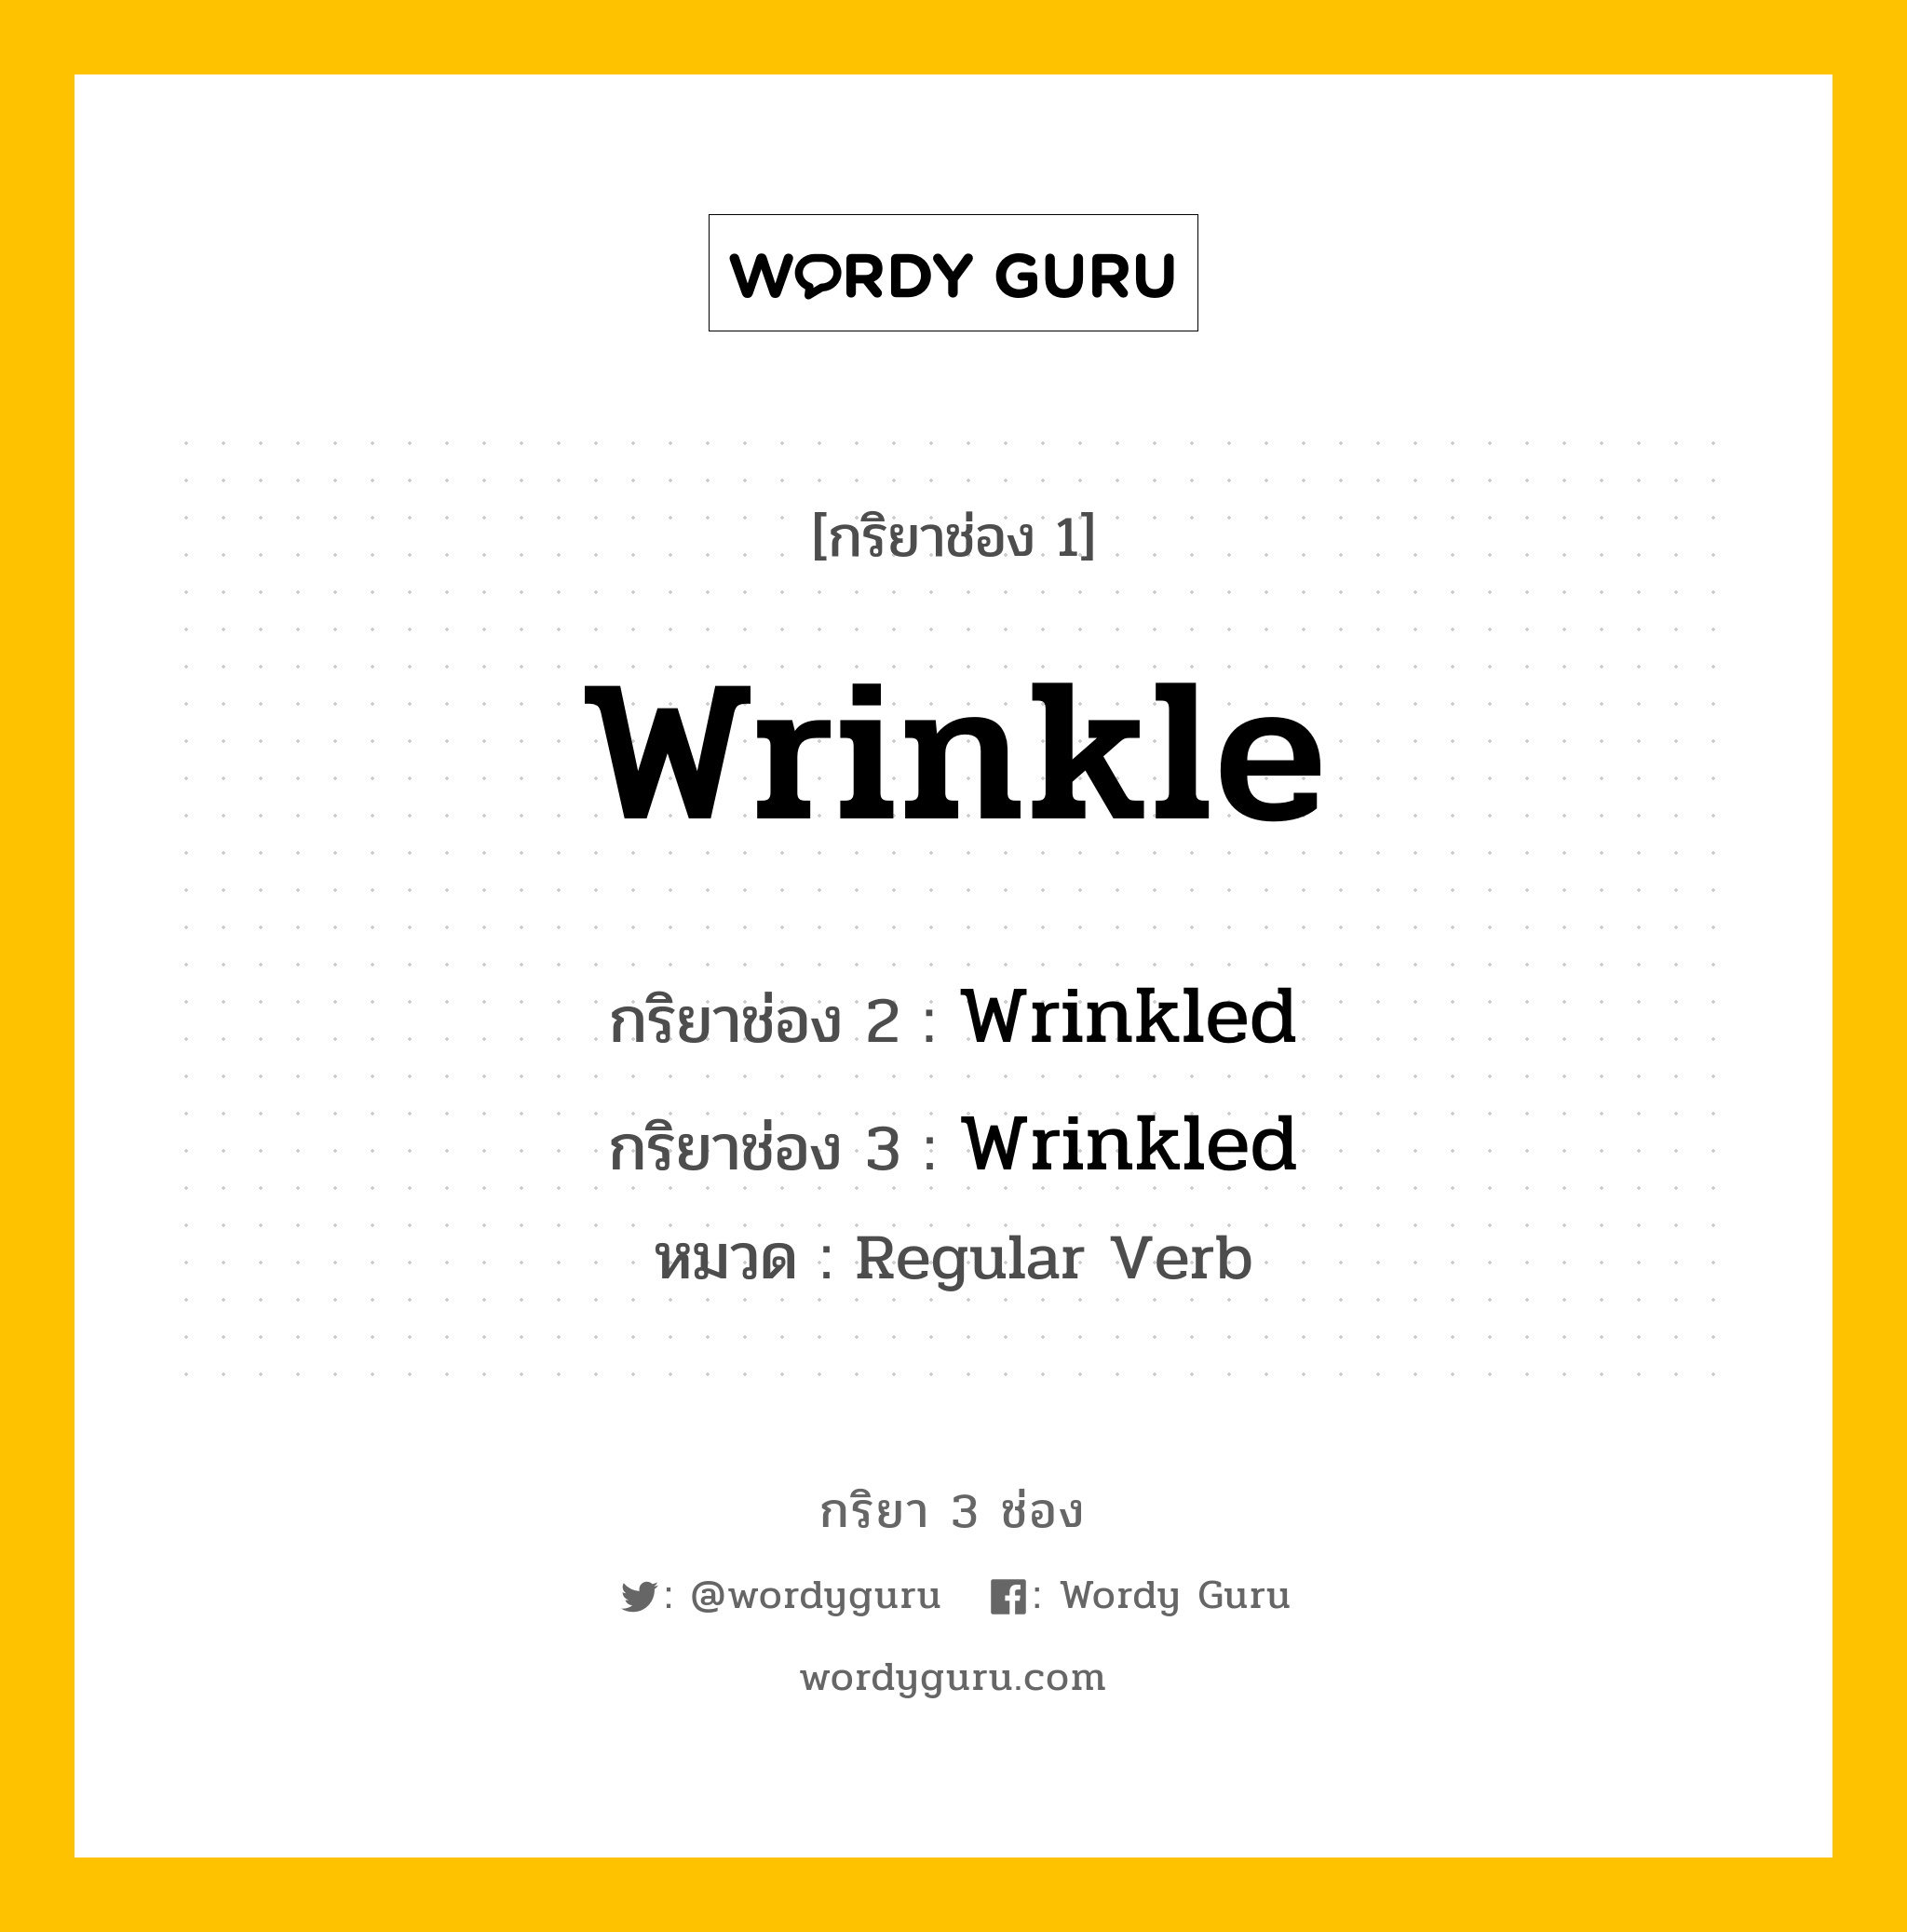 กริยา 3 ช่อง: Wrinkle ช่อง 2 Wrinkle ช่อง 3 คืออะไร, กริยาช่อง 1 Wrinkle กริยาช่อง 2 Wrinkled กริยาช่อง 3 Wrinkled หมวด Regular Verb หมวด Regular Verb